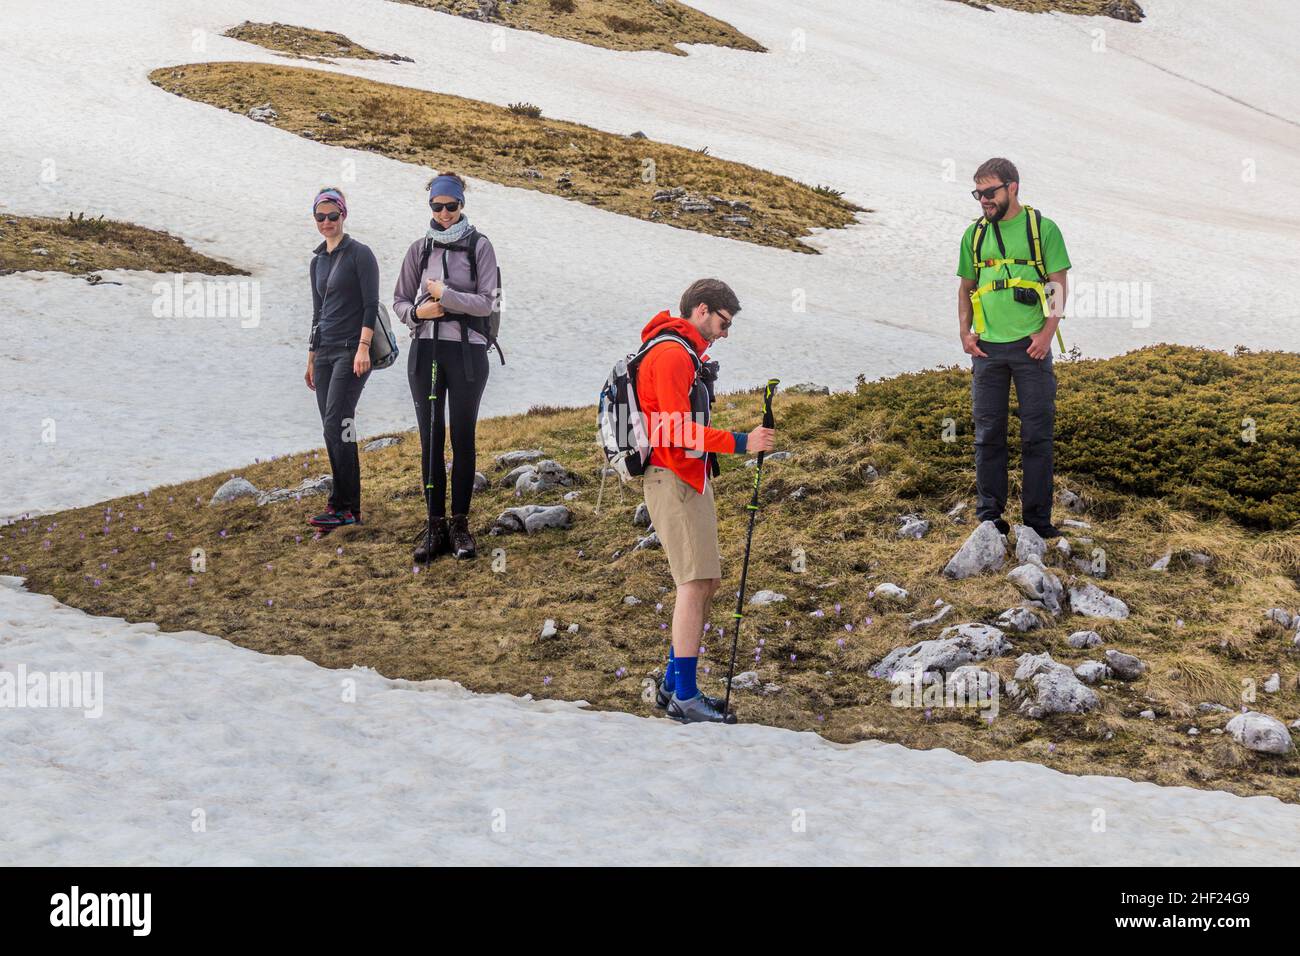 DURMITOR, MONTENEGRO - 6 DE JUNIO de 2019: Grupo de excursionistas en el parque nacional de Durmitor, Montenegro. Foto de stock